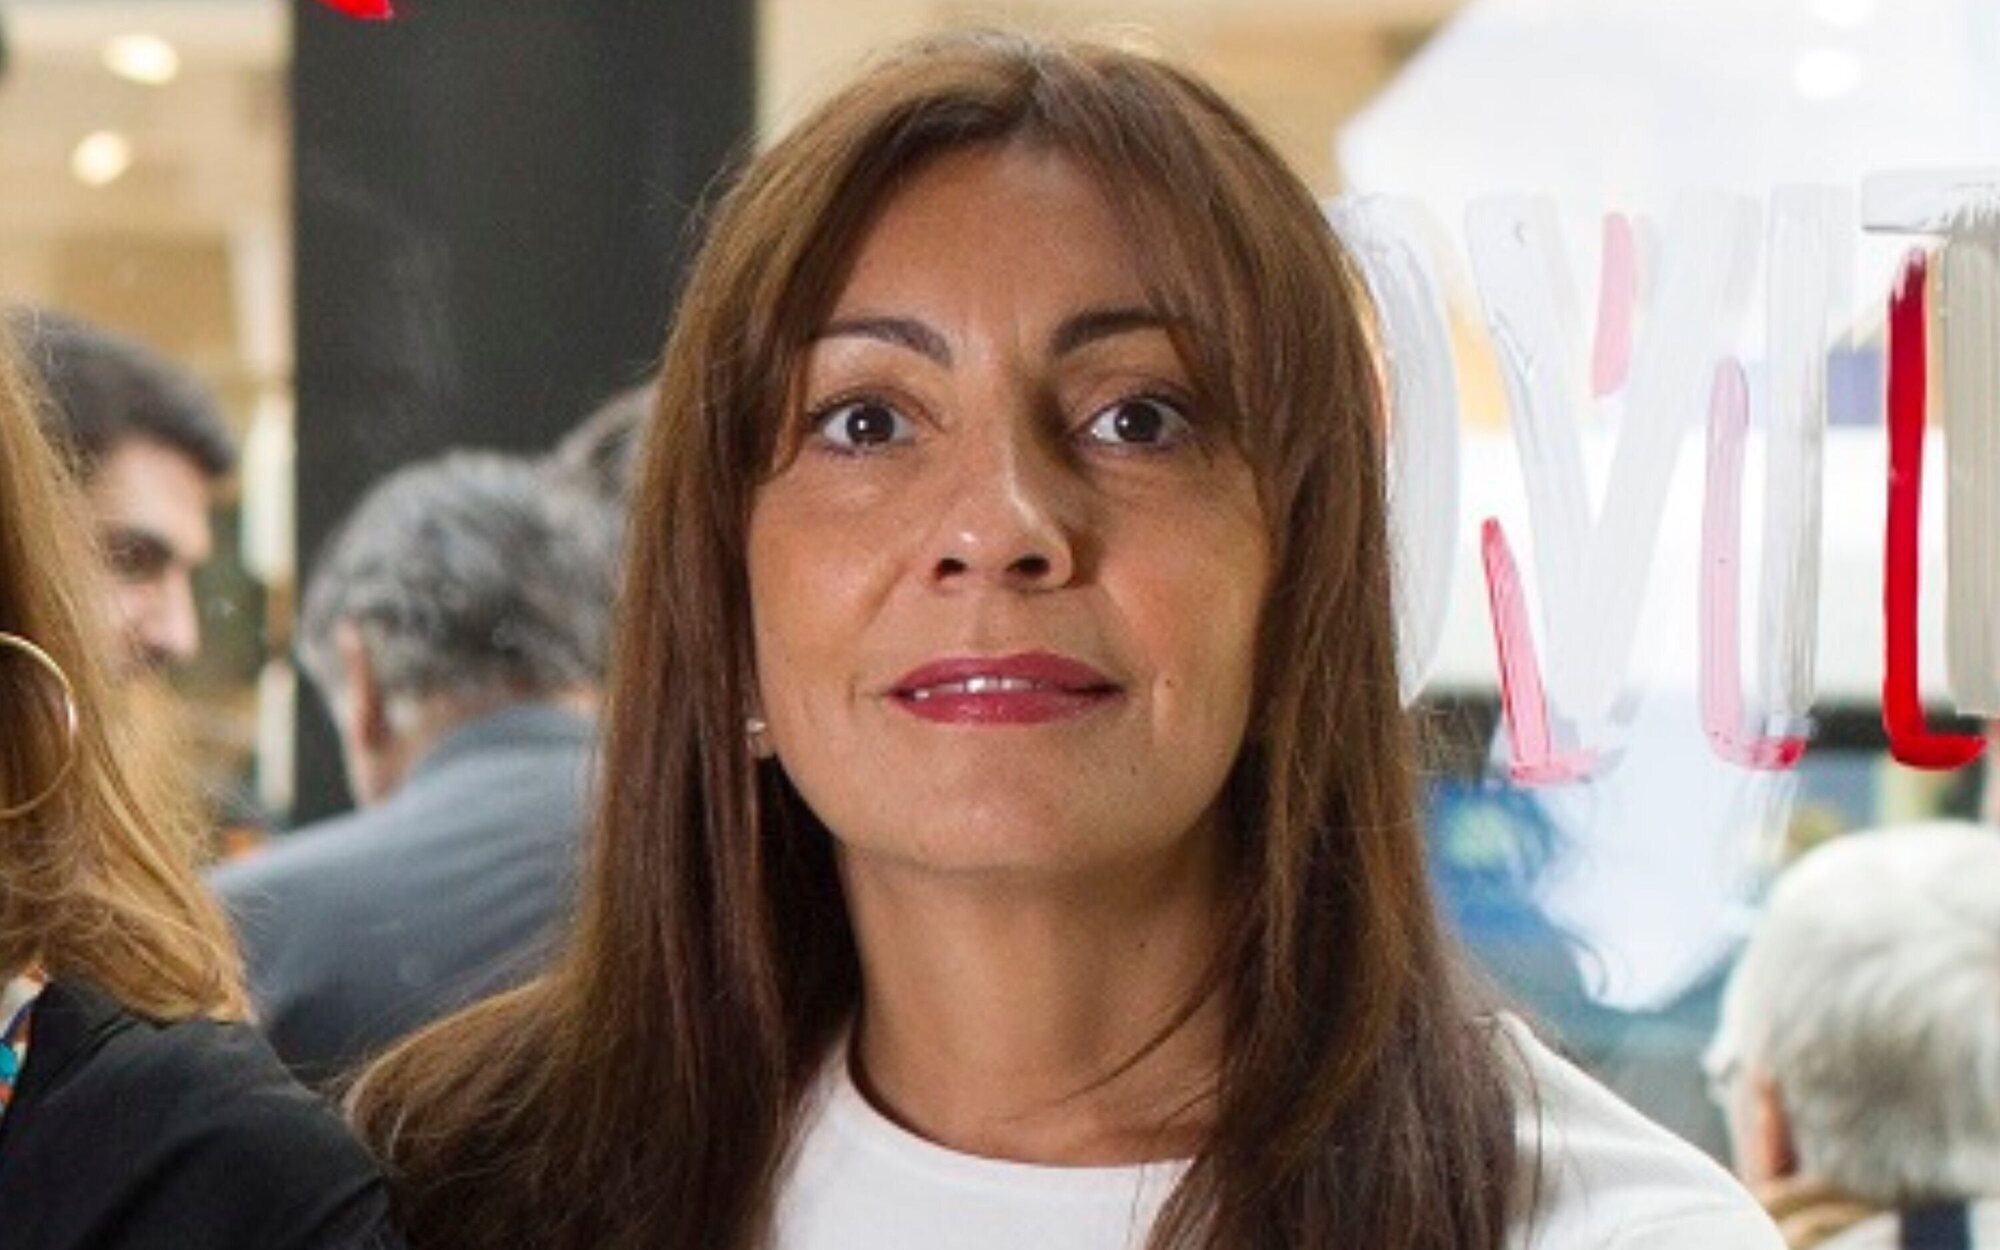 Ana Rivas ('Me resbala'): "Todo lo que hacemos en Shine podría encajar muy bien ahora mismo en Mediaset"